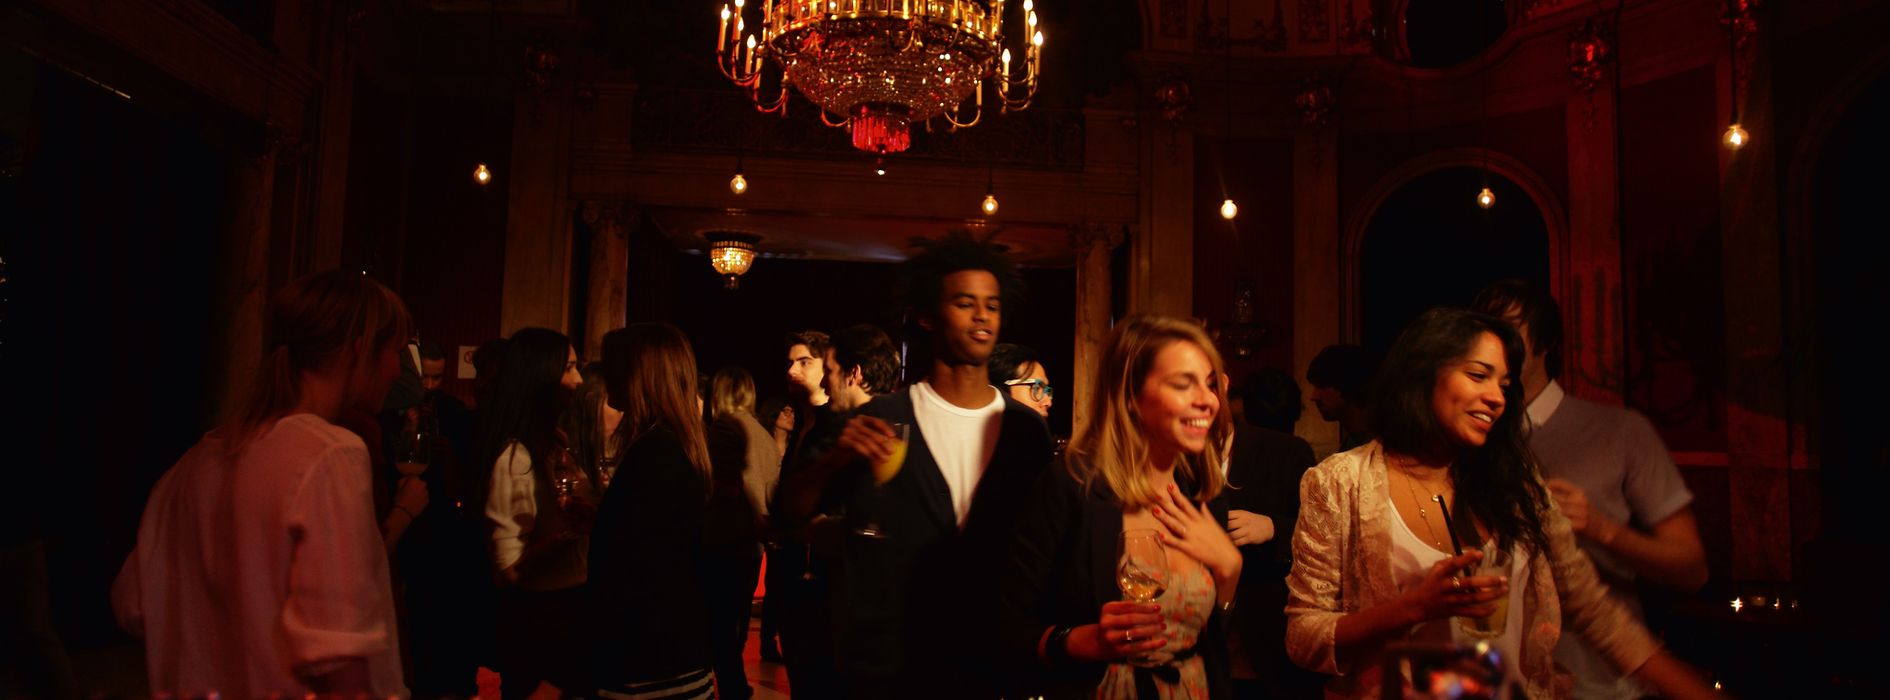 Des gens dansent au bar rouge au Volkstheater.